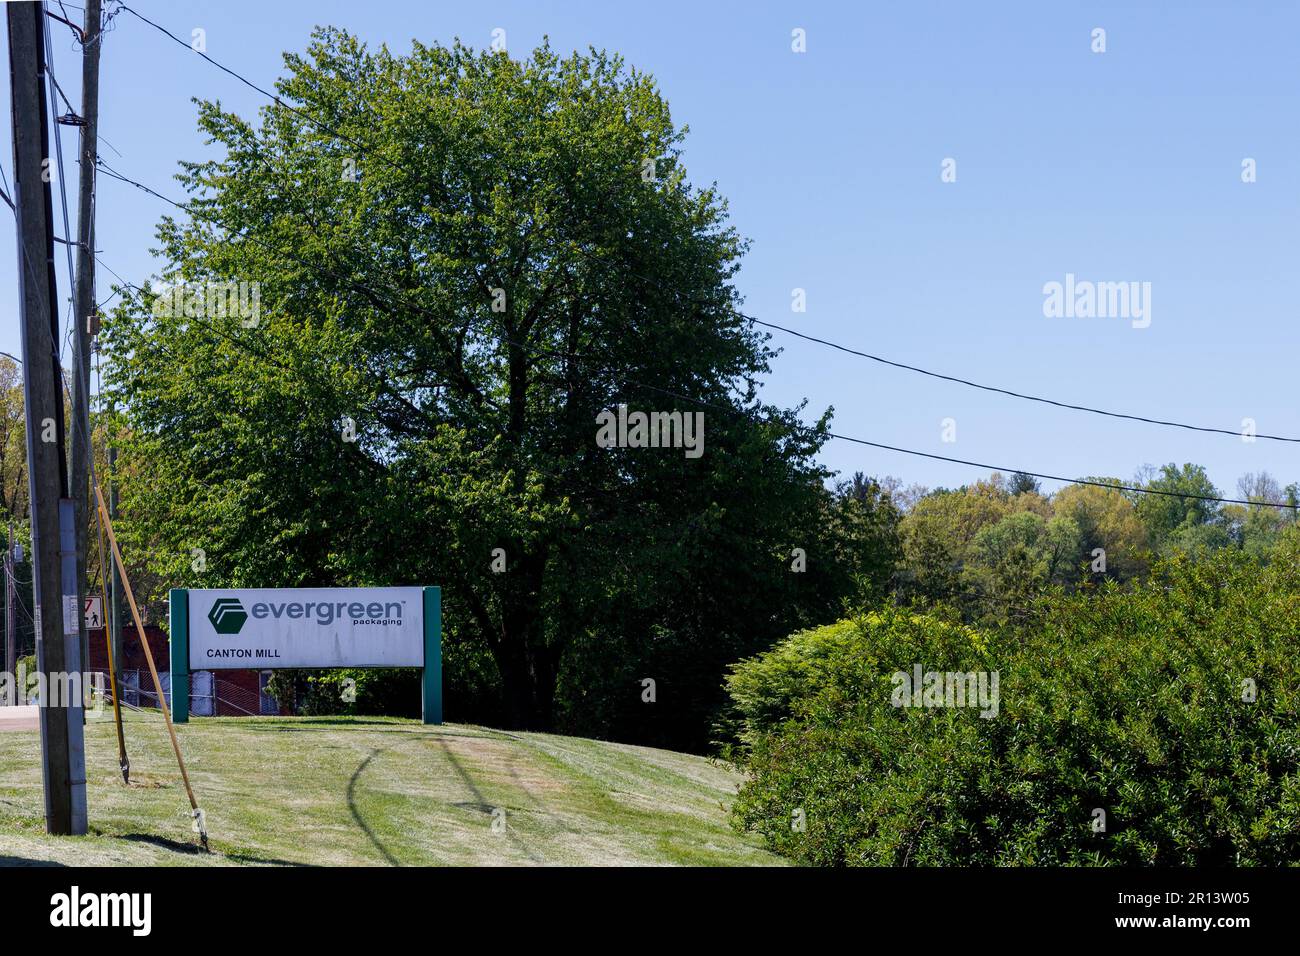 CANTON, NC, USA-4. MAI 2023: Monument-Schild für Evergreen Packaging, Canton Mill, umgeben von üppigem Grün. Stockfoto